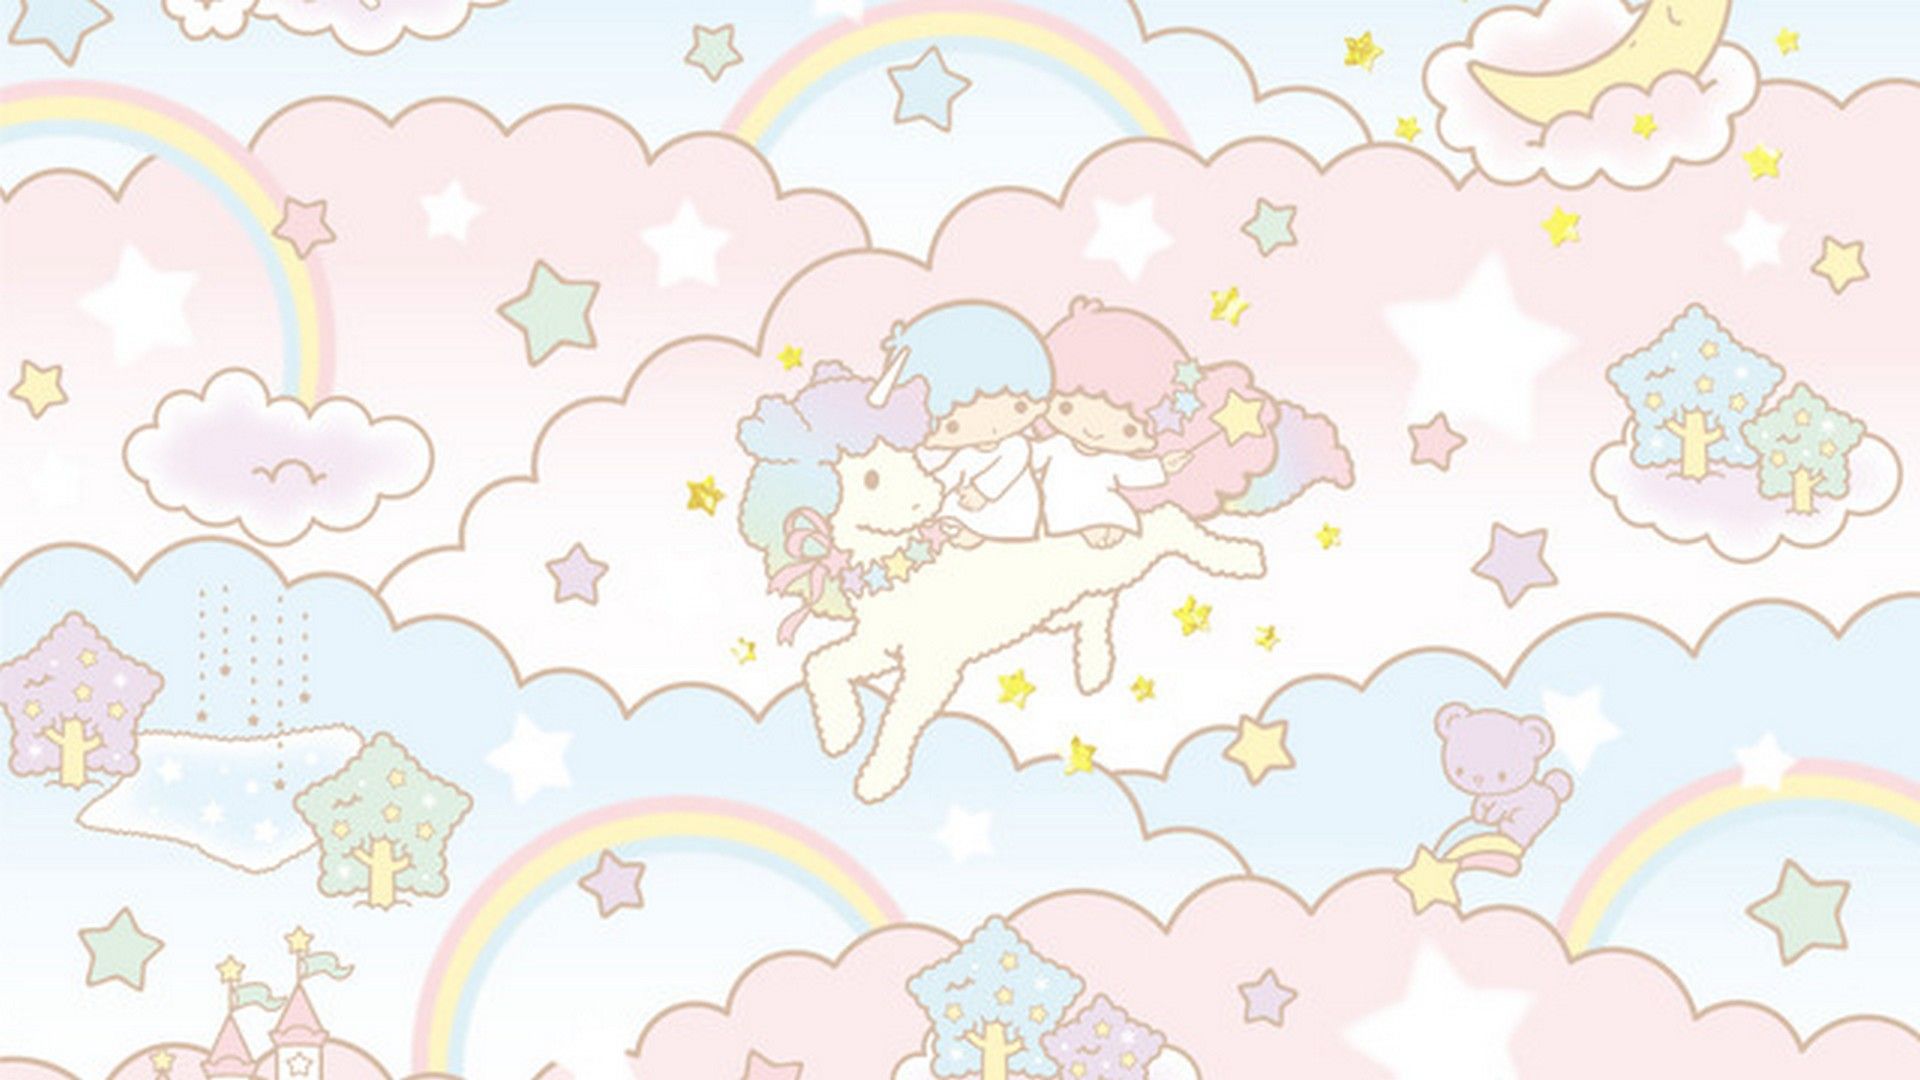 Cute Girly Unicorn Desktop Wallpaper .wallpapercute.com